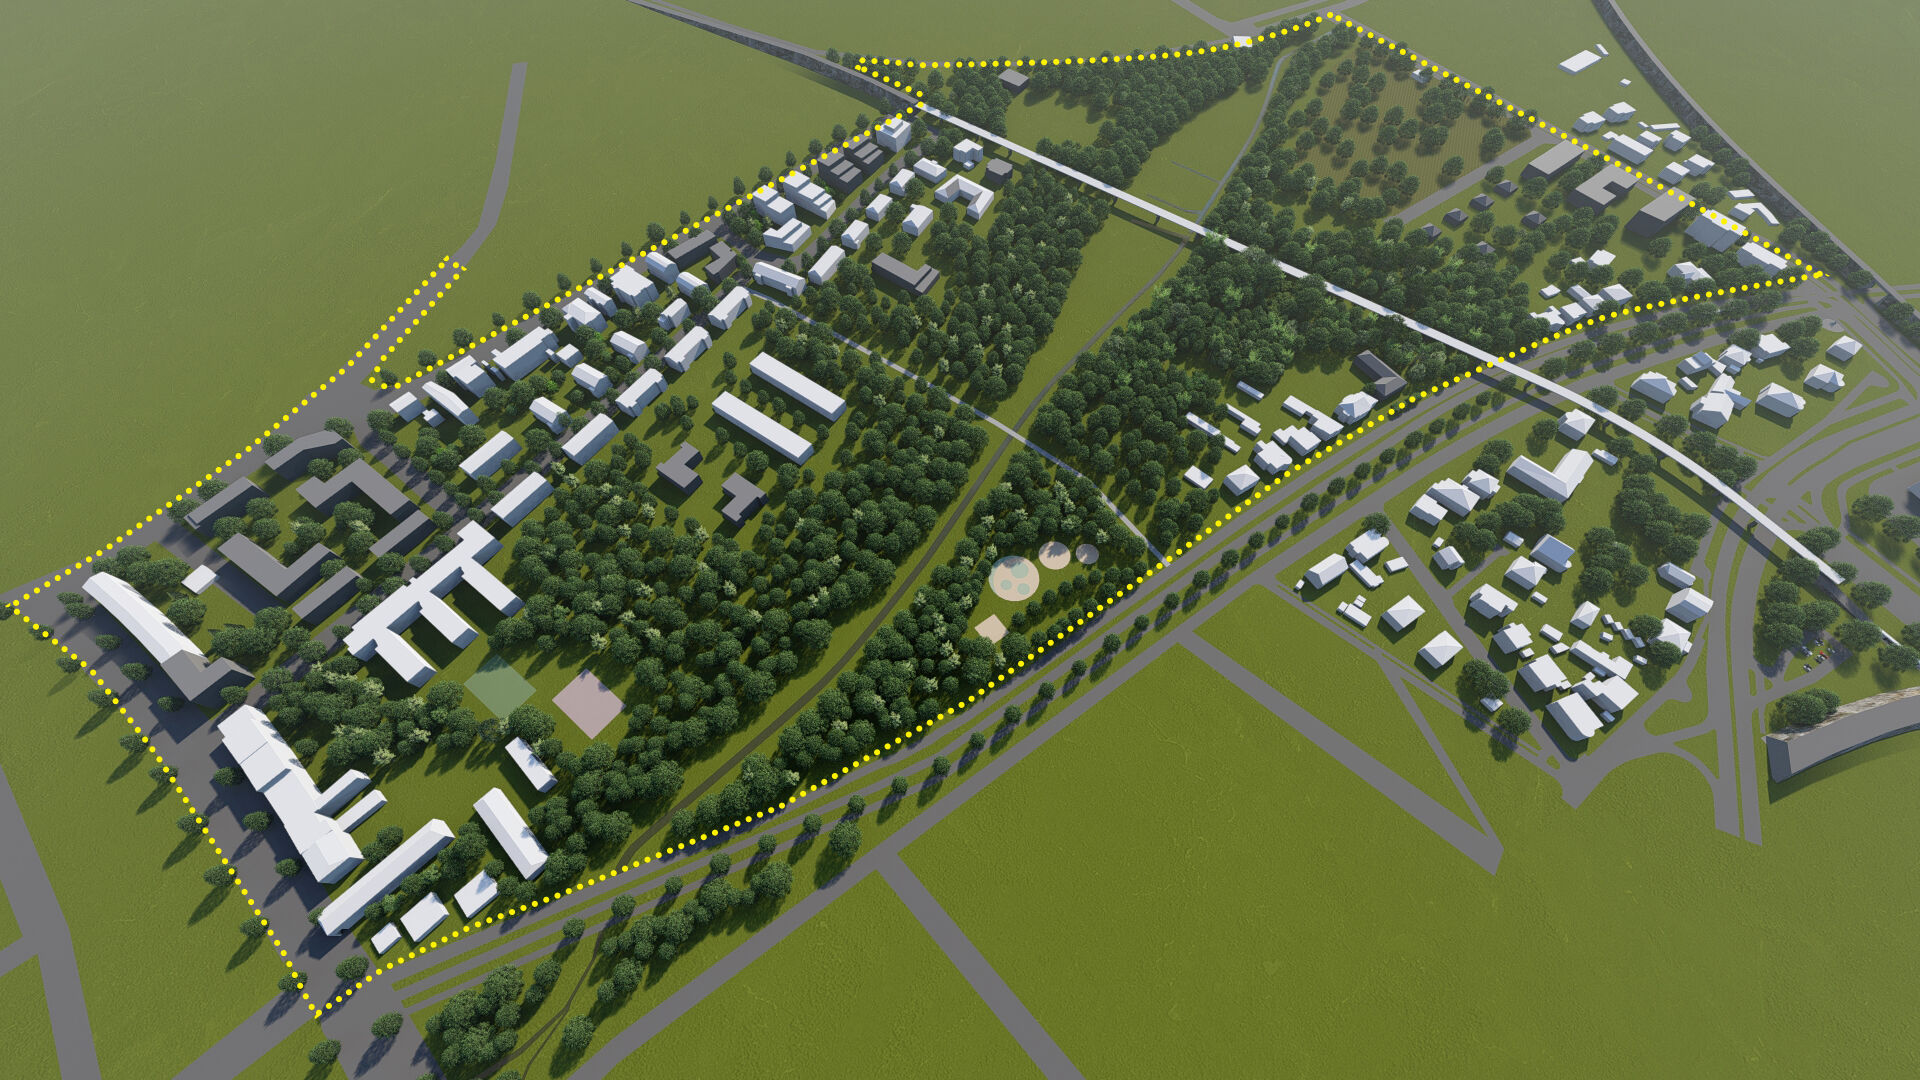 Wizualizacja. Propozycja zagospodarowania terenu wg projektu planu miejscowego. Model terenu przedstawiający Park im. Adama Wodziczki z projektowanymi terenami zieleni, istniejące i projektowane budynki oraz układ komunikacyjny.